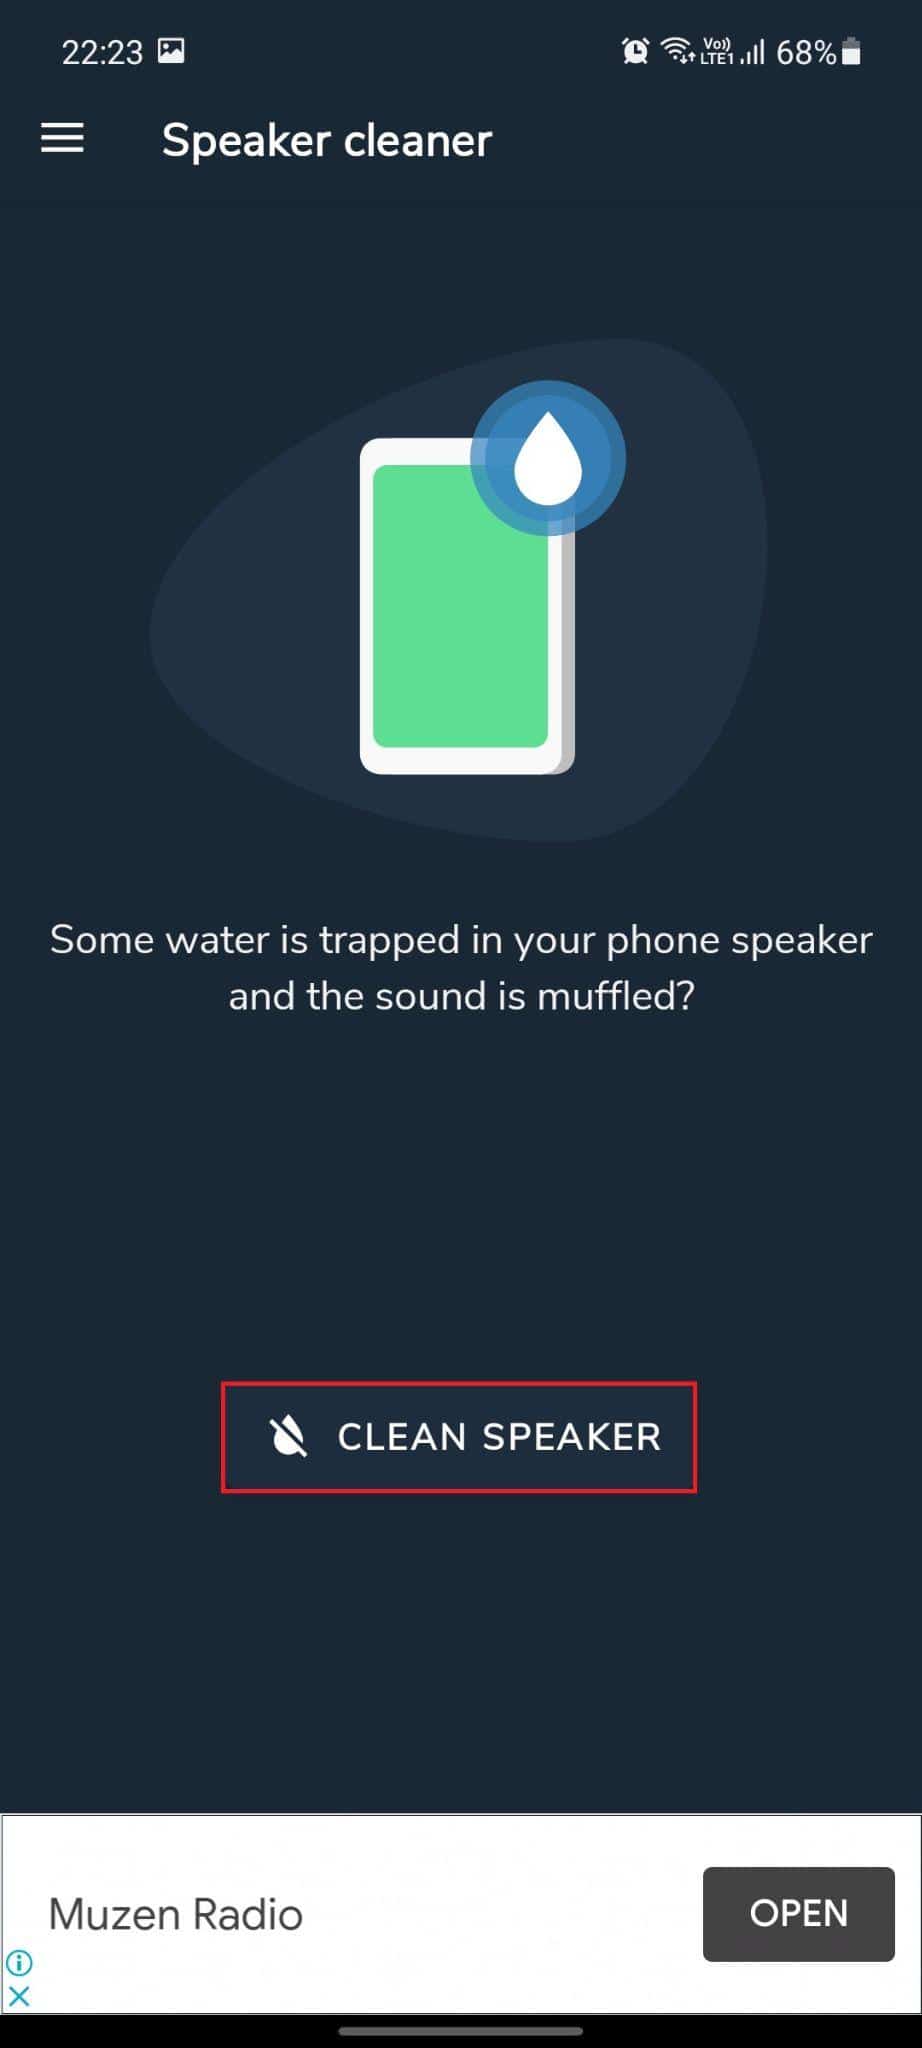 Lautsprecherreiniger – Wasser entfernen und Sound-App reparieren. Die Option „Lautsprecher reinigen“ ist hervorgehoben. So beheben Sie einen Wasserschaden am Telefonlautsprecher